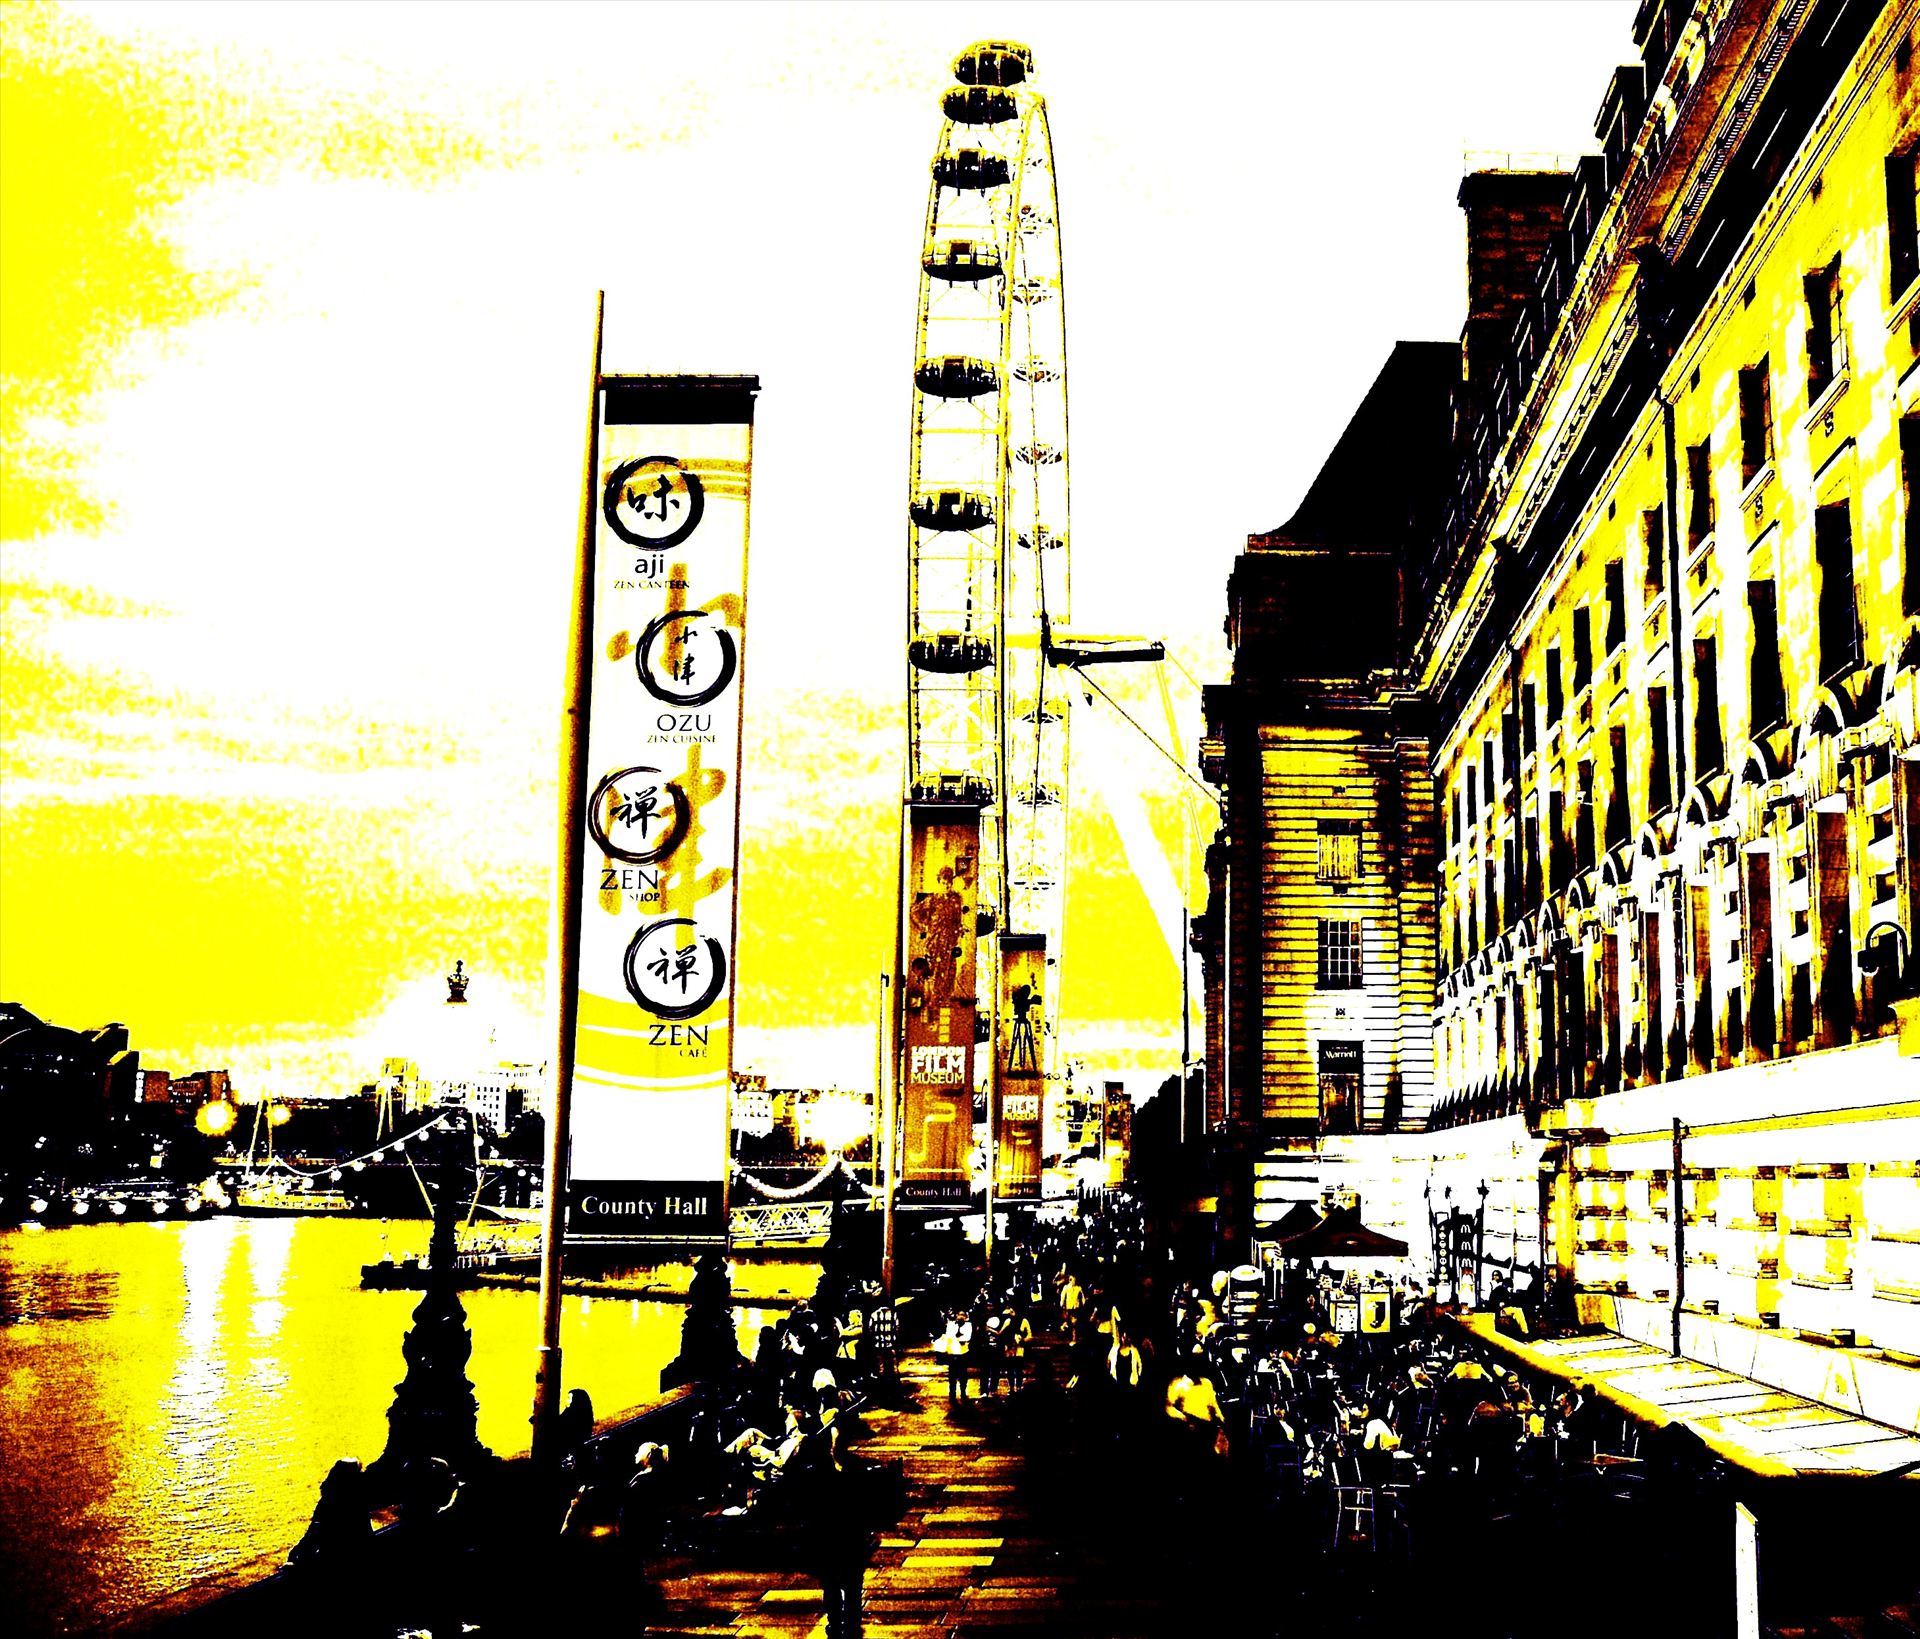 London Eye (3).jpg - Pop Art London Eye Image by PopArtMediaProductions